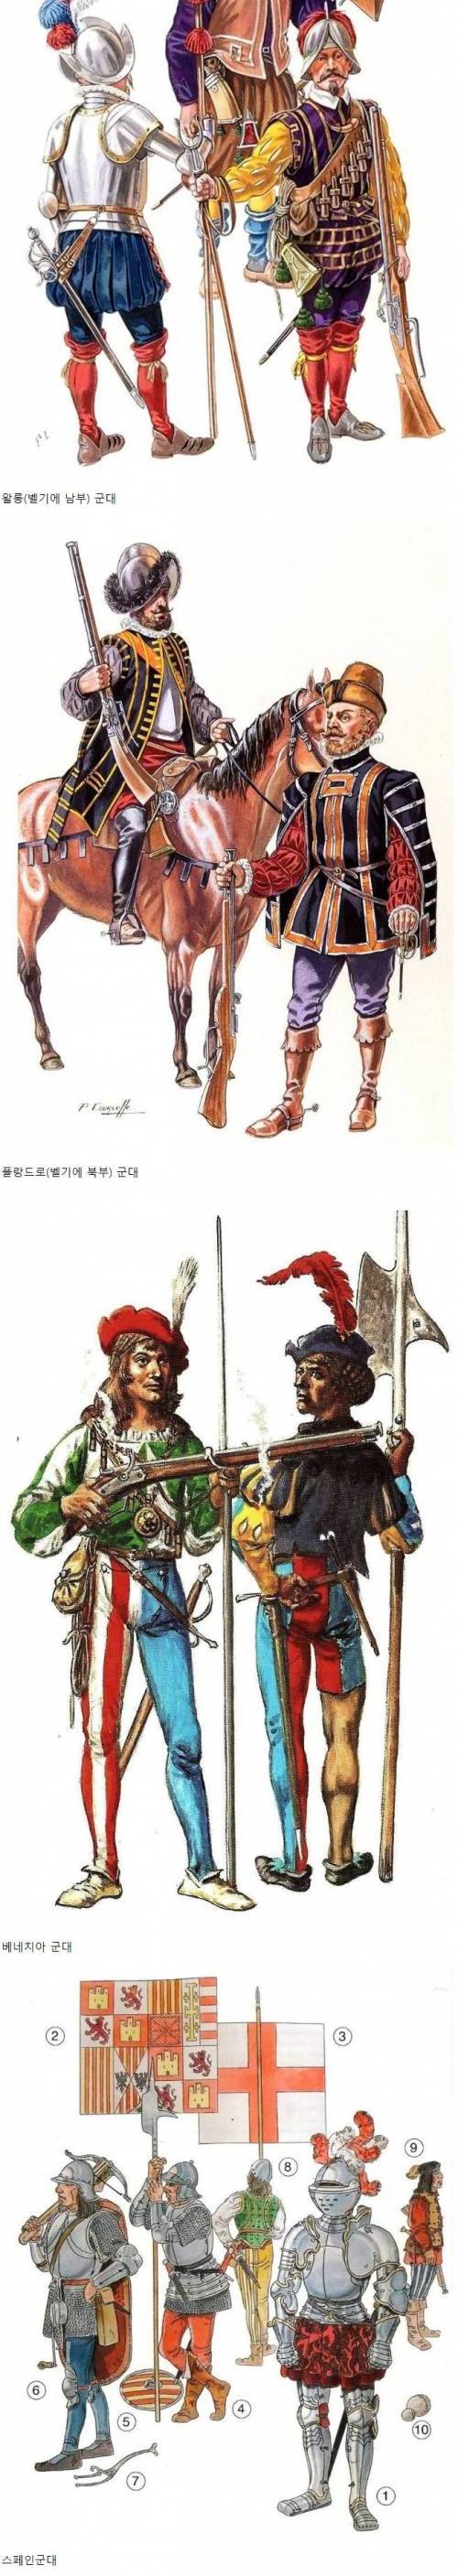 [스압] 지금봐도 난해한 16세기 유럽 군대 패션.jpg